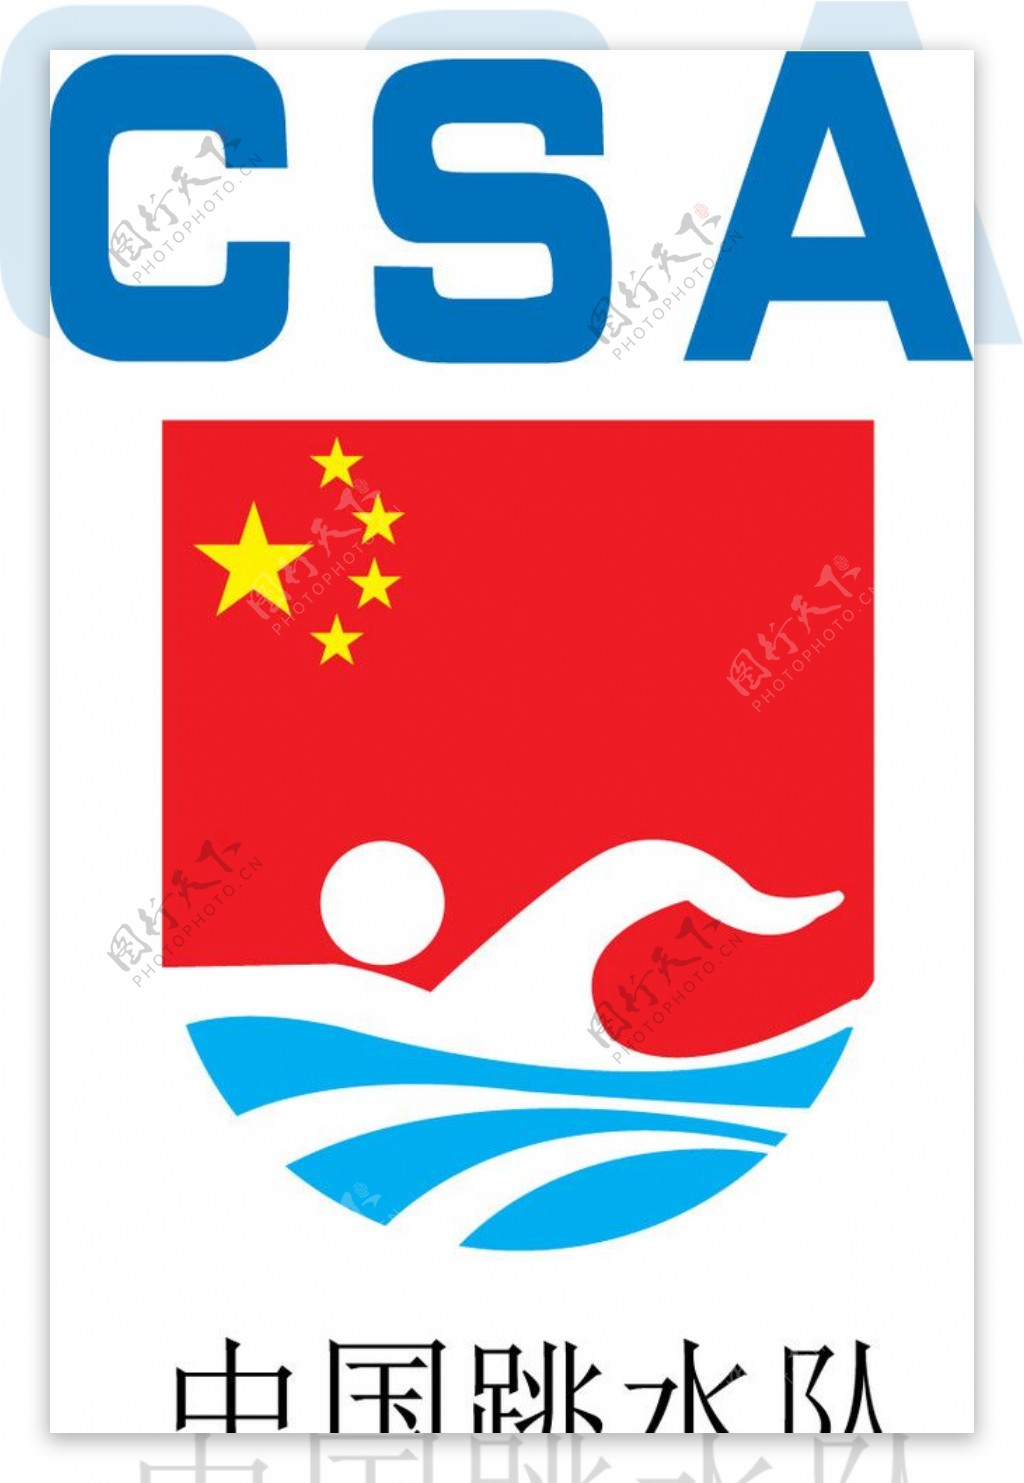 中国跳水队专用产品认证商标CSA图片